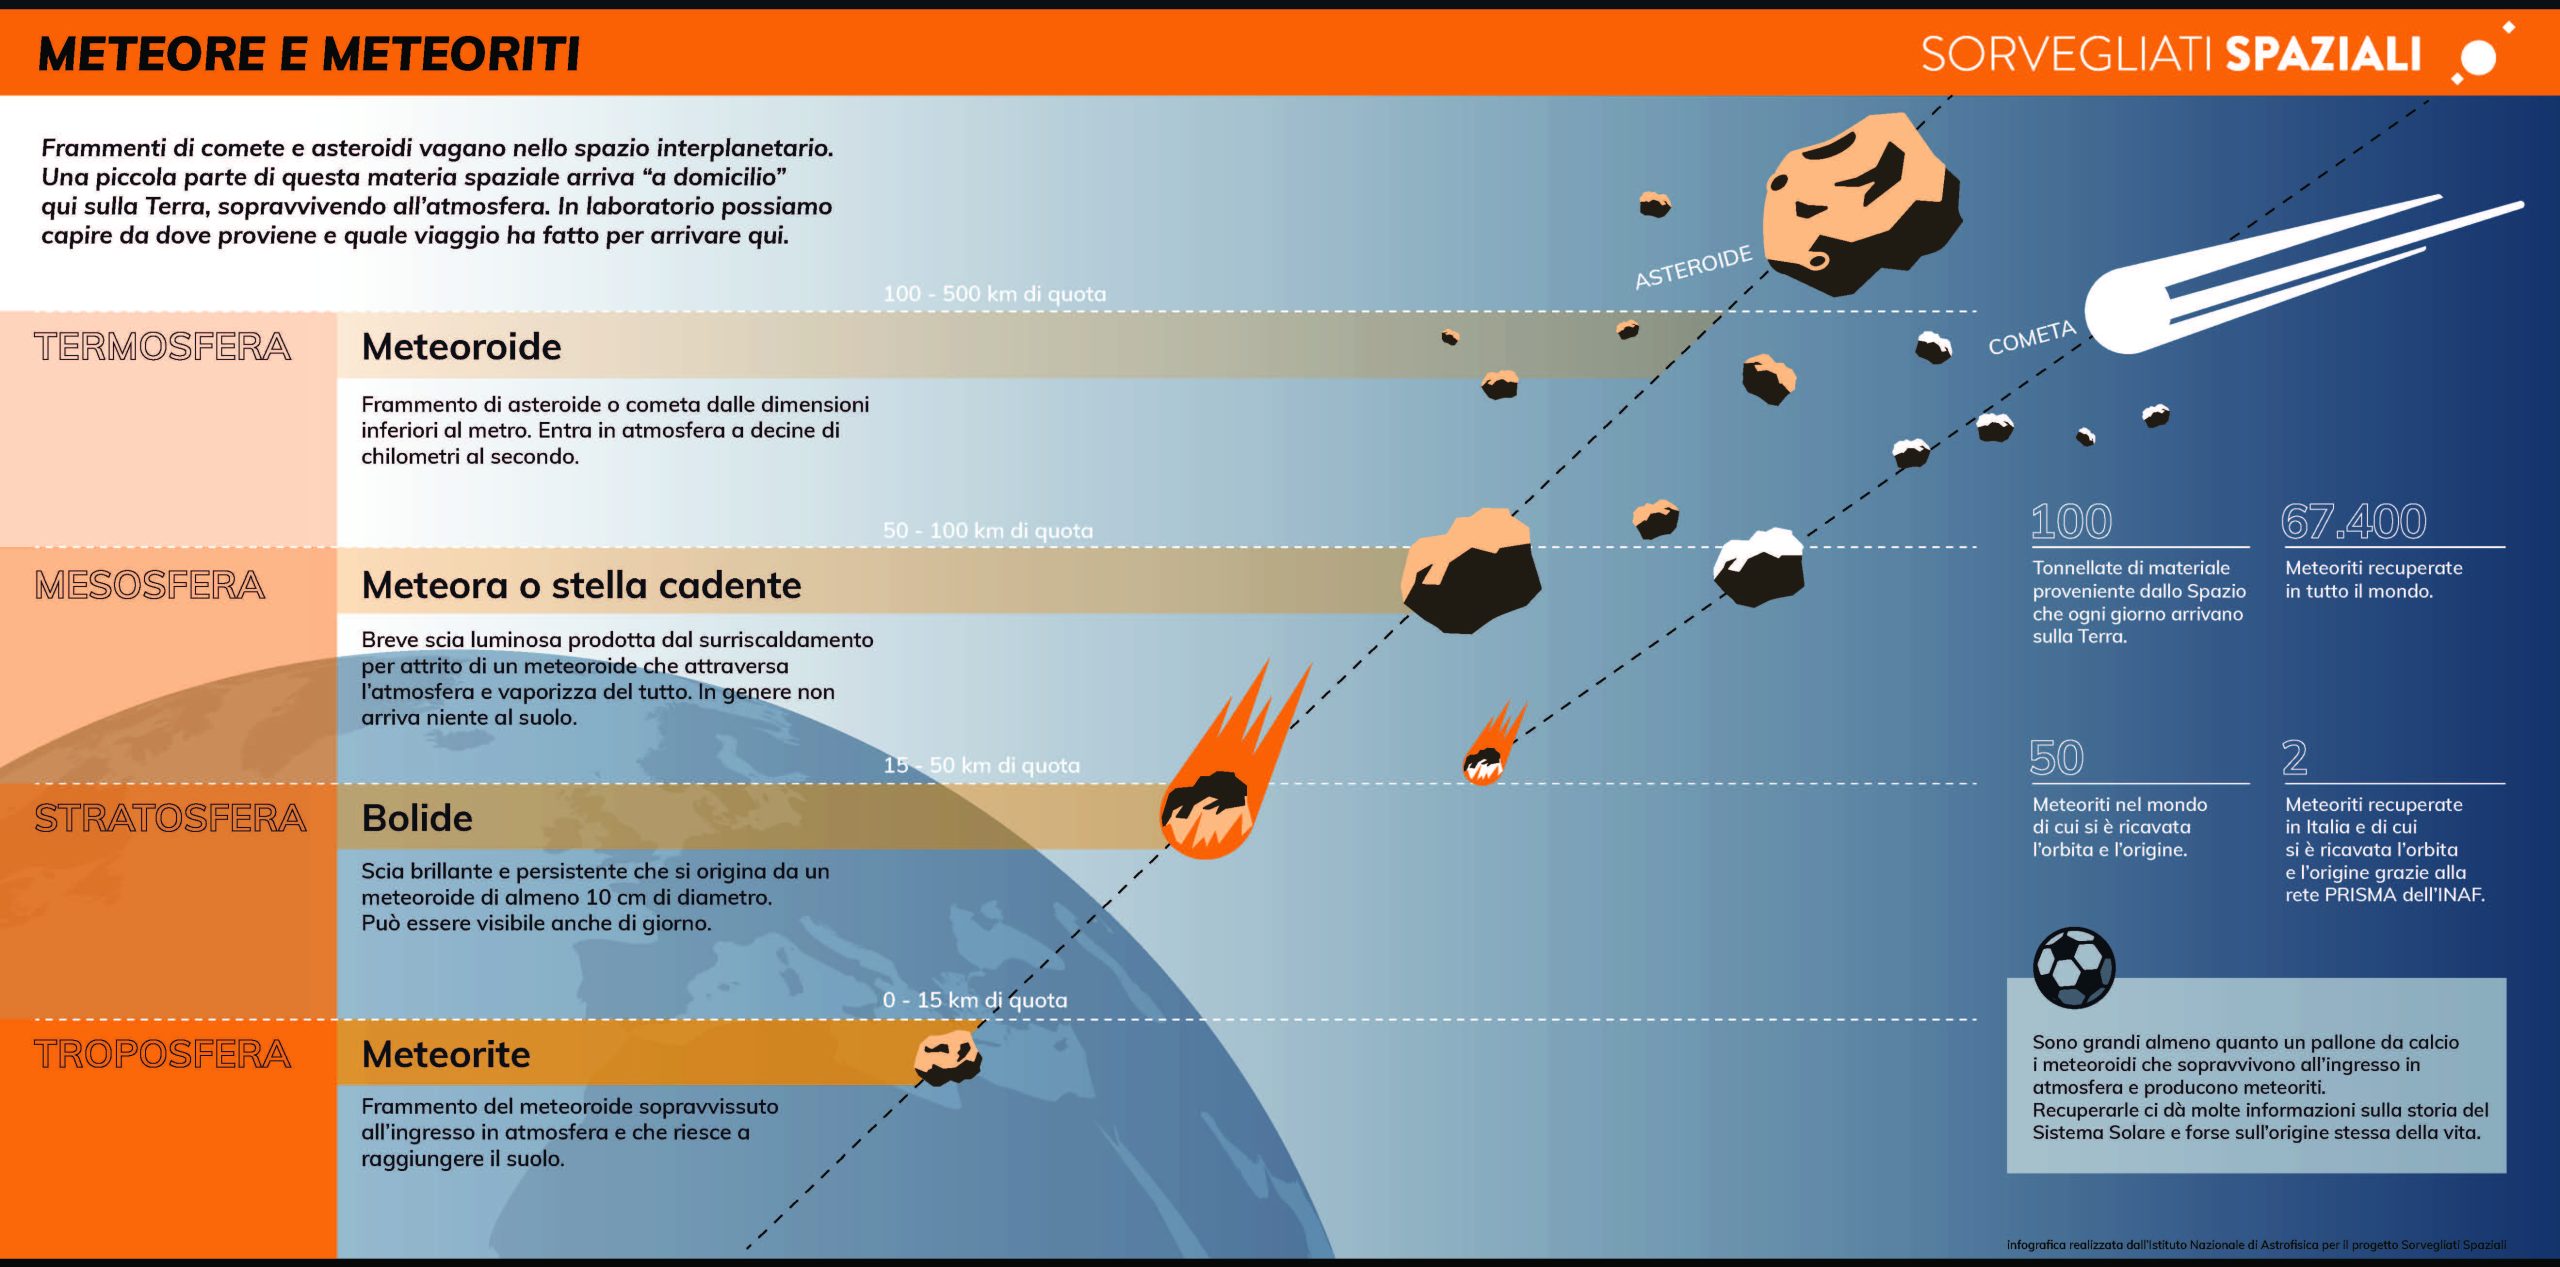 Infografica meteore e meteoriti